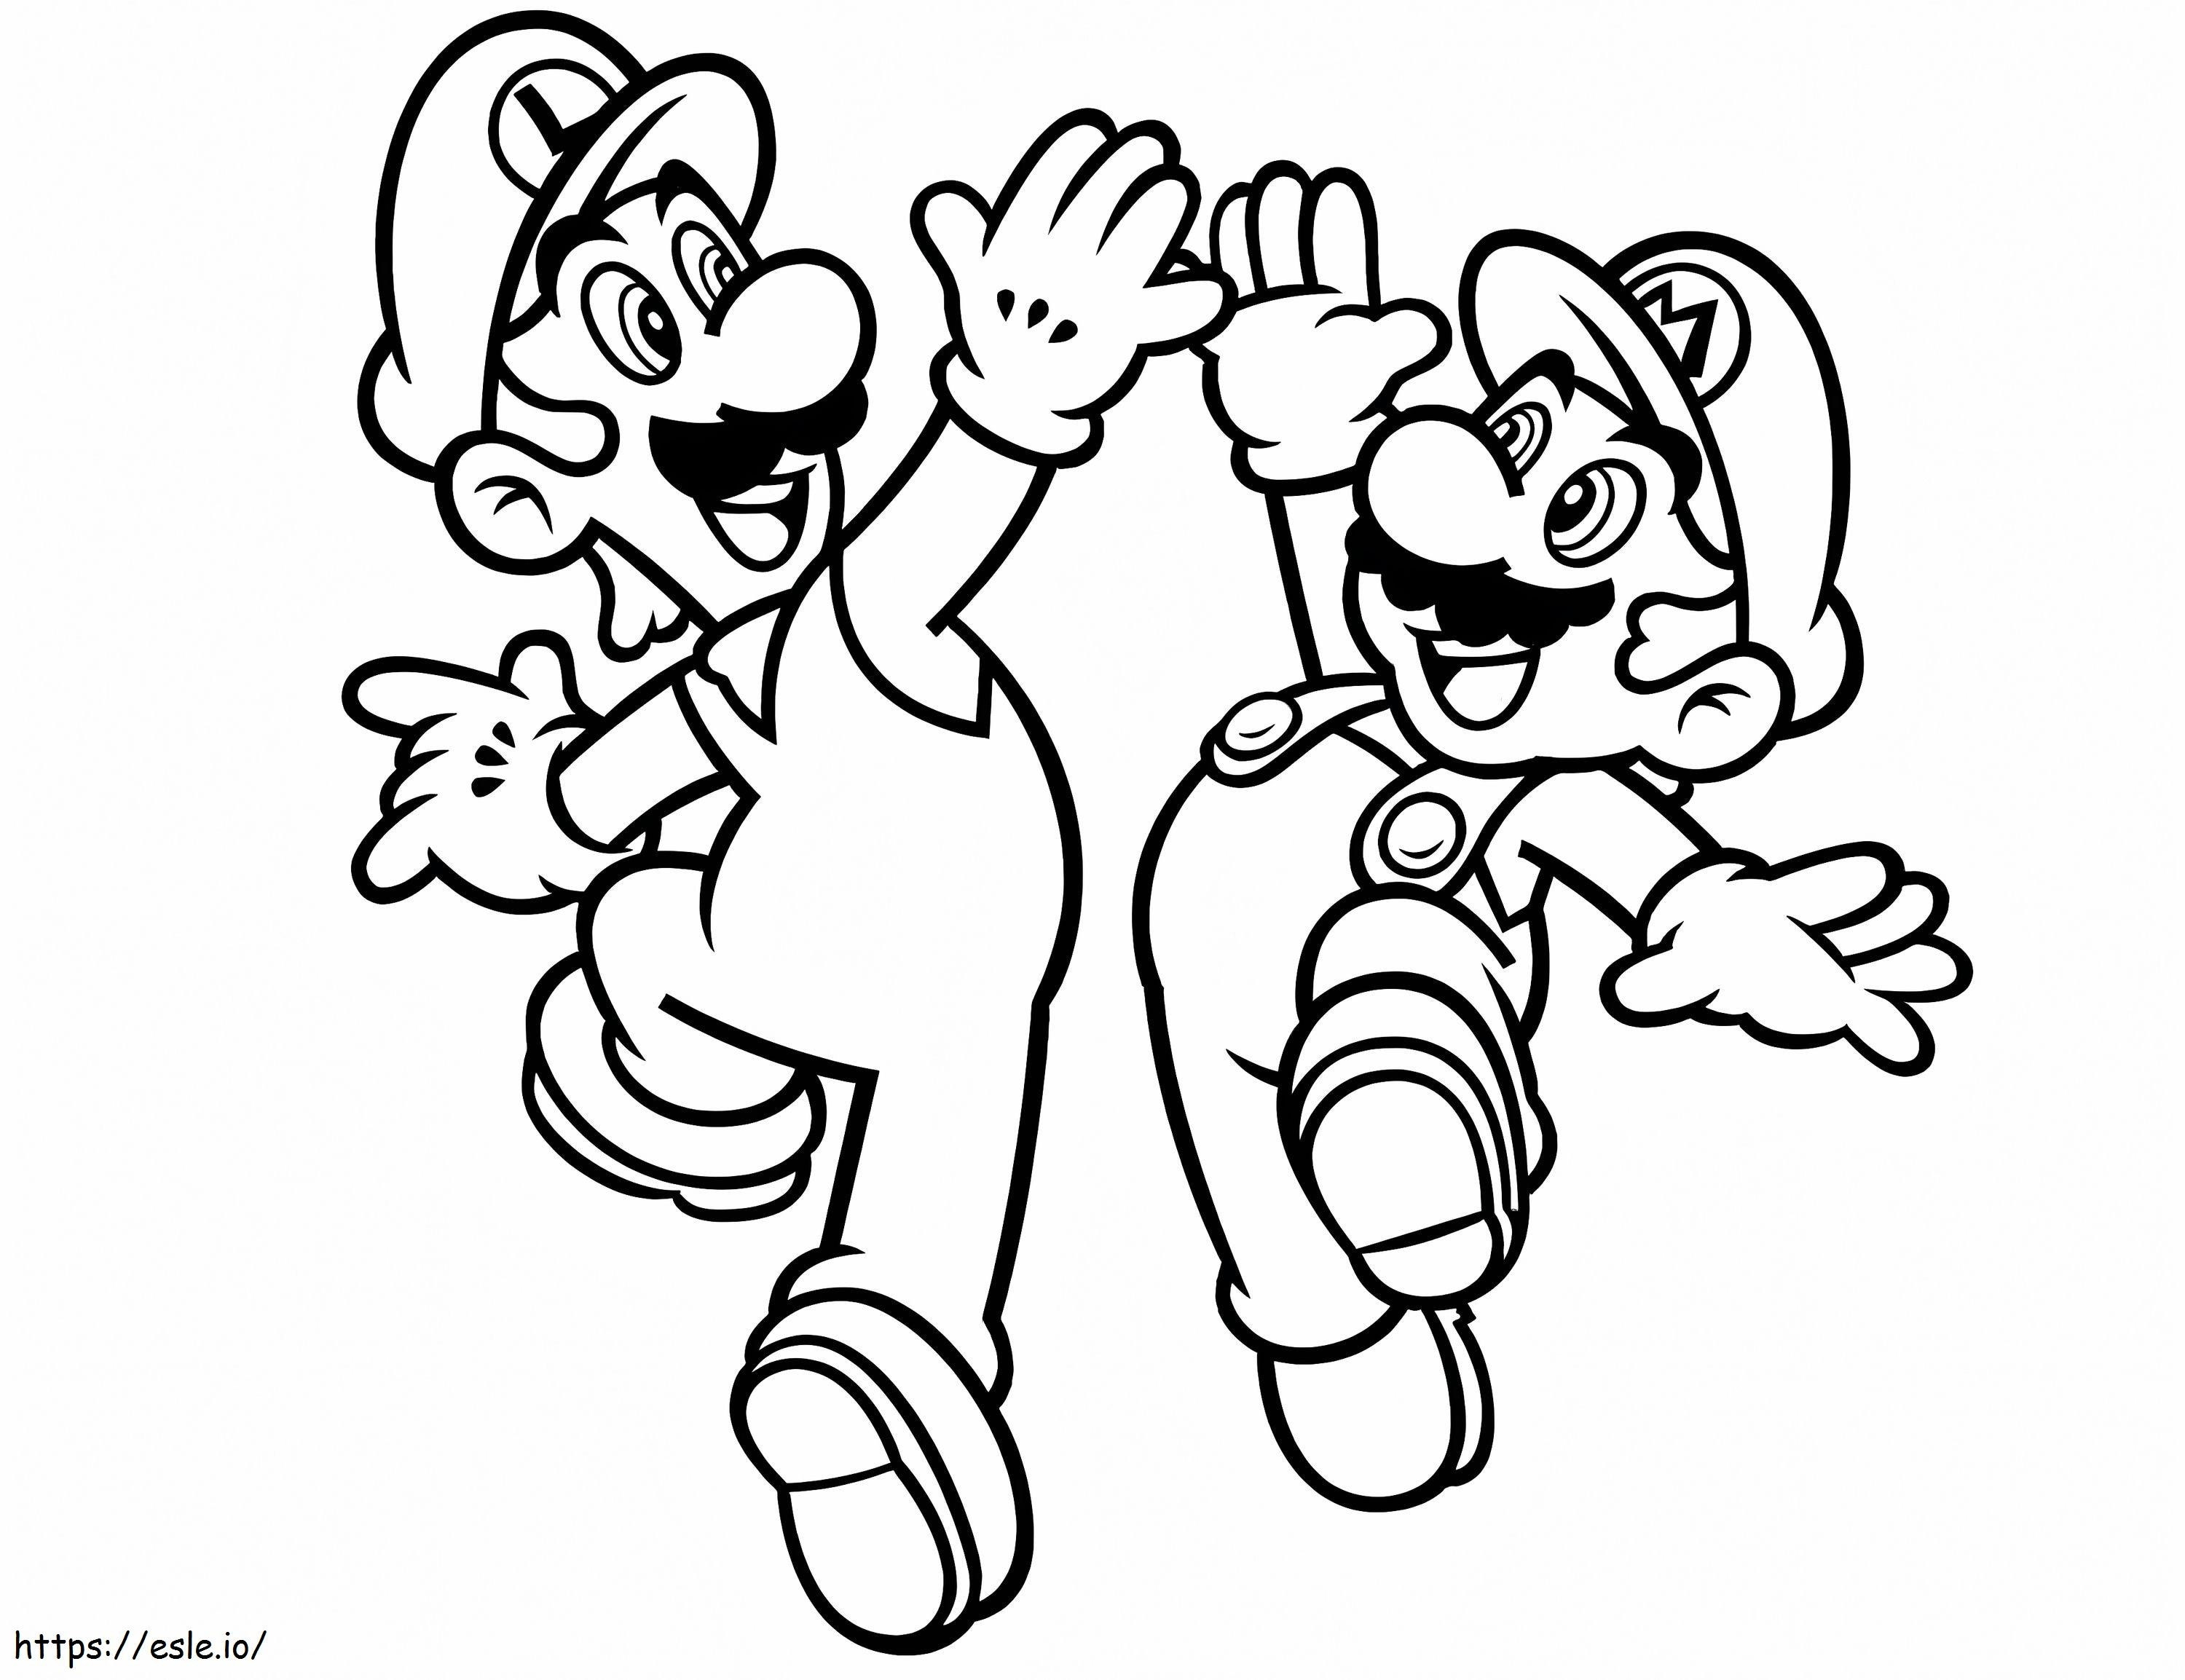 Happy Luigi And Mario coloring page